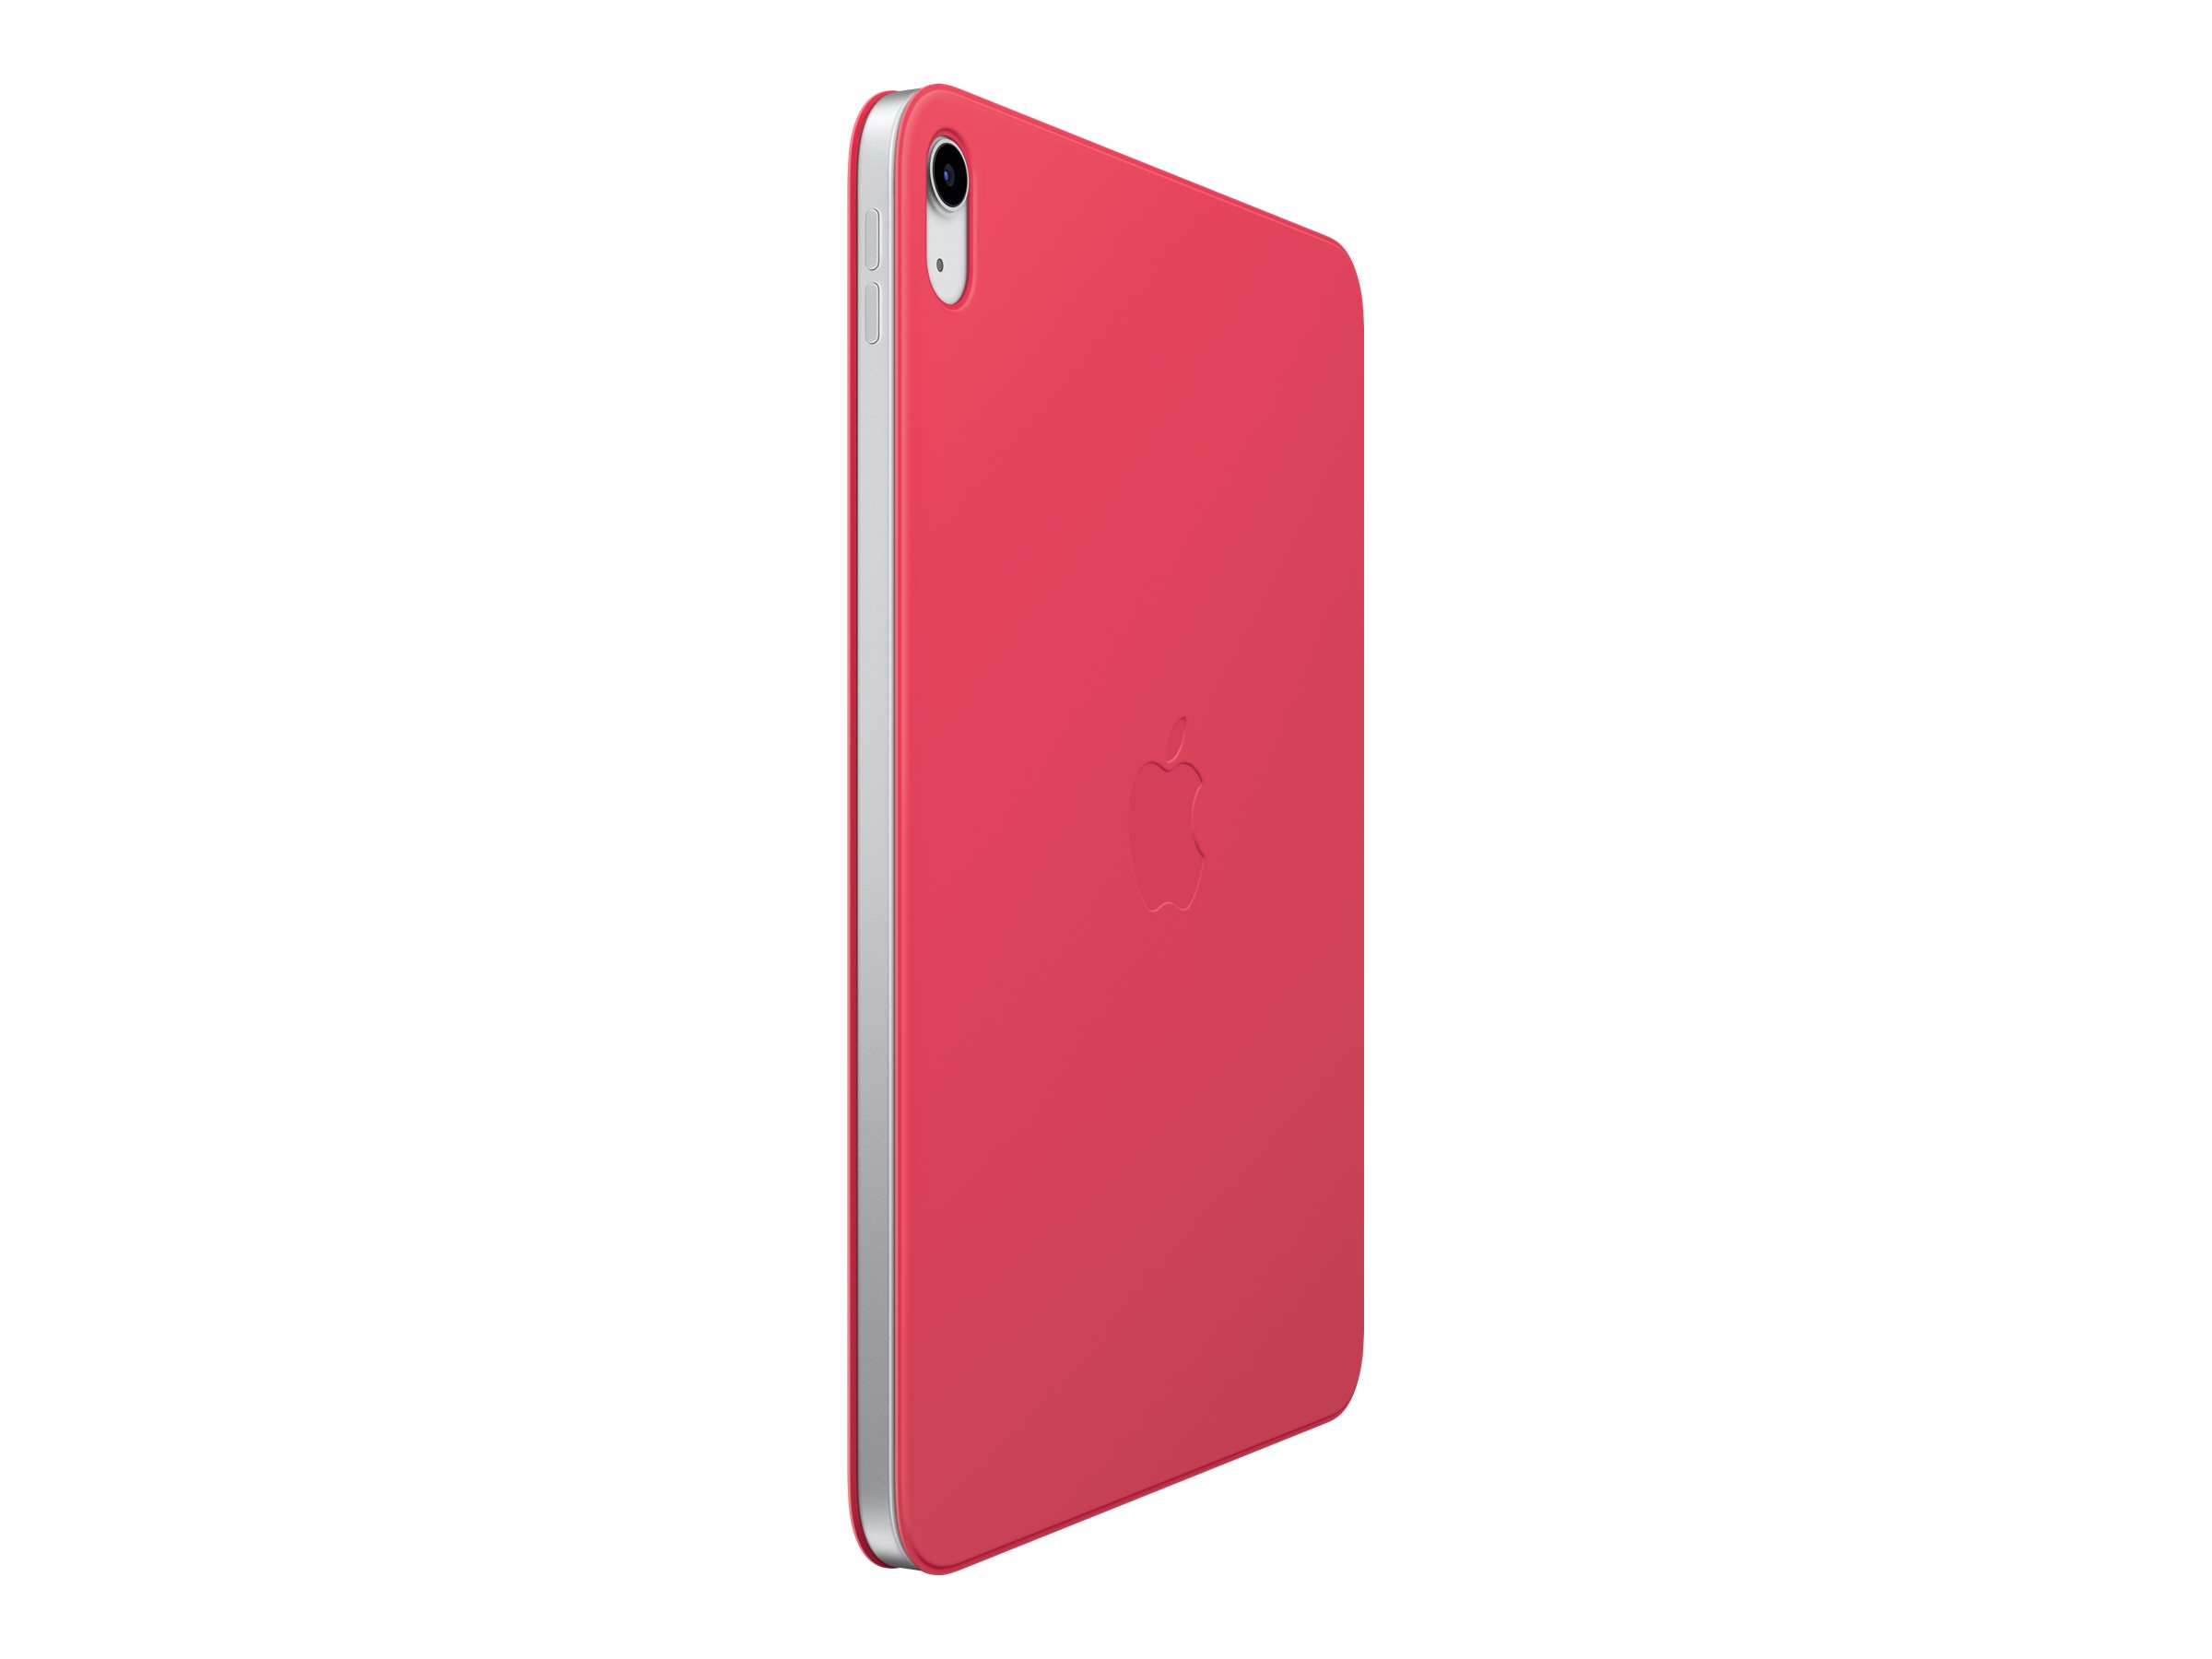 Apple Smart - Flip-Hülle für Tablet - Watermelon - für 10.9-inch iPad (10. Generation)